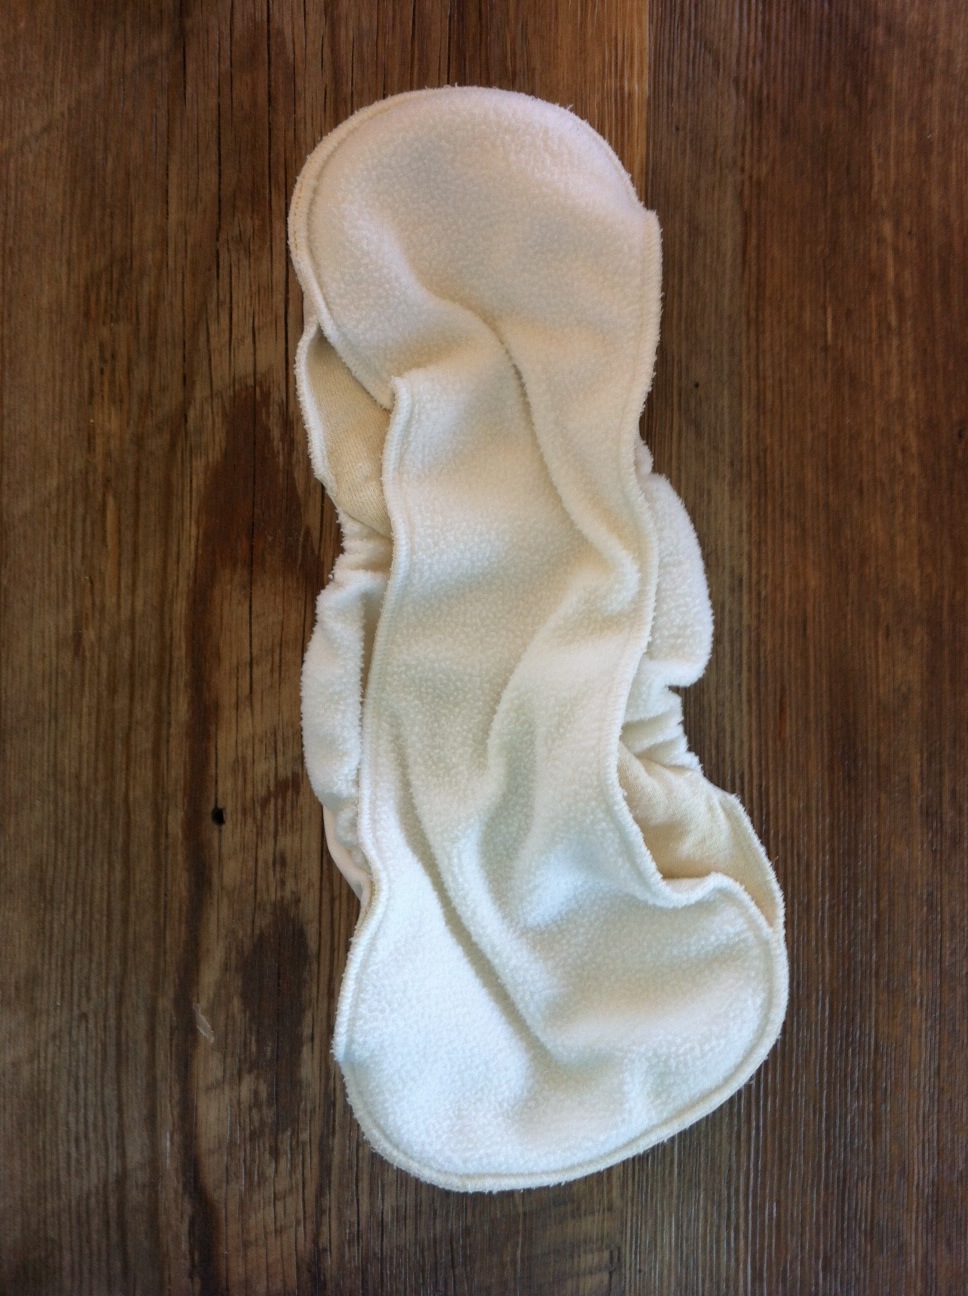 cloth-diapering-grovia